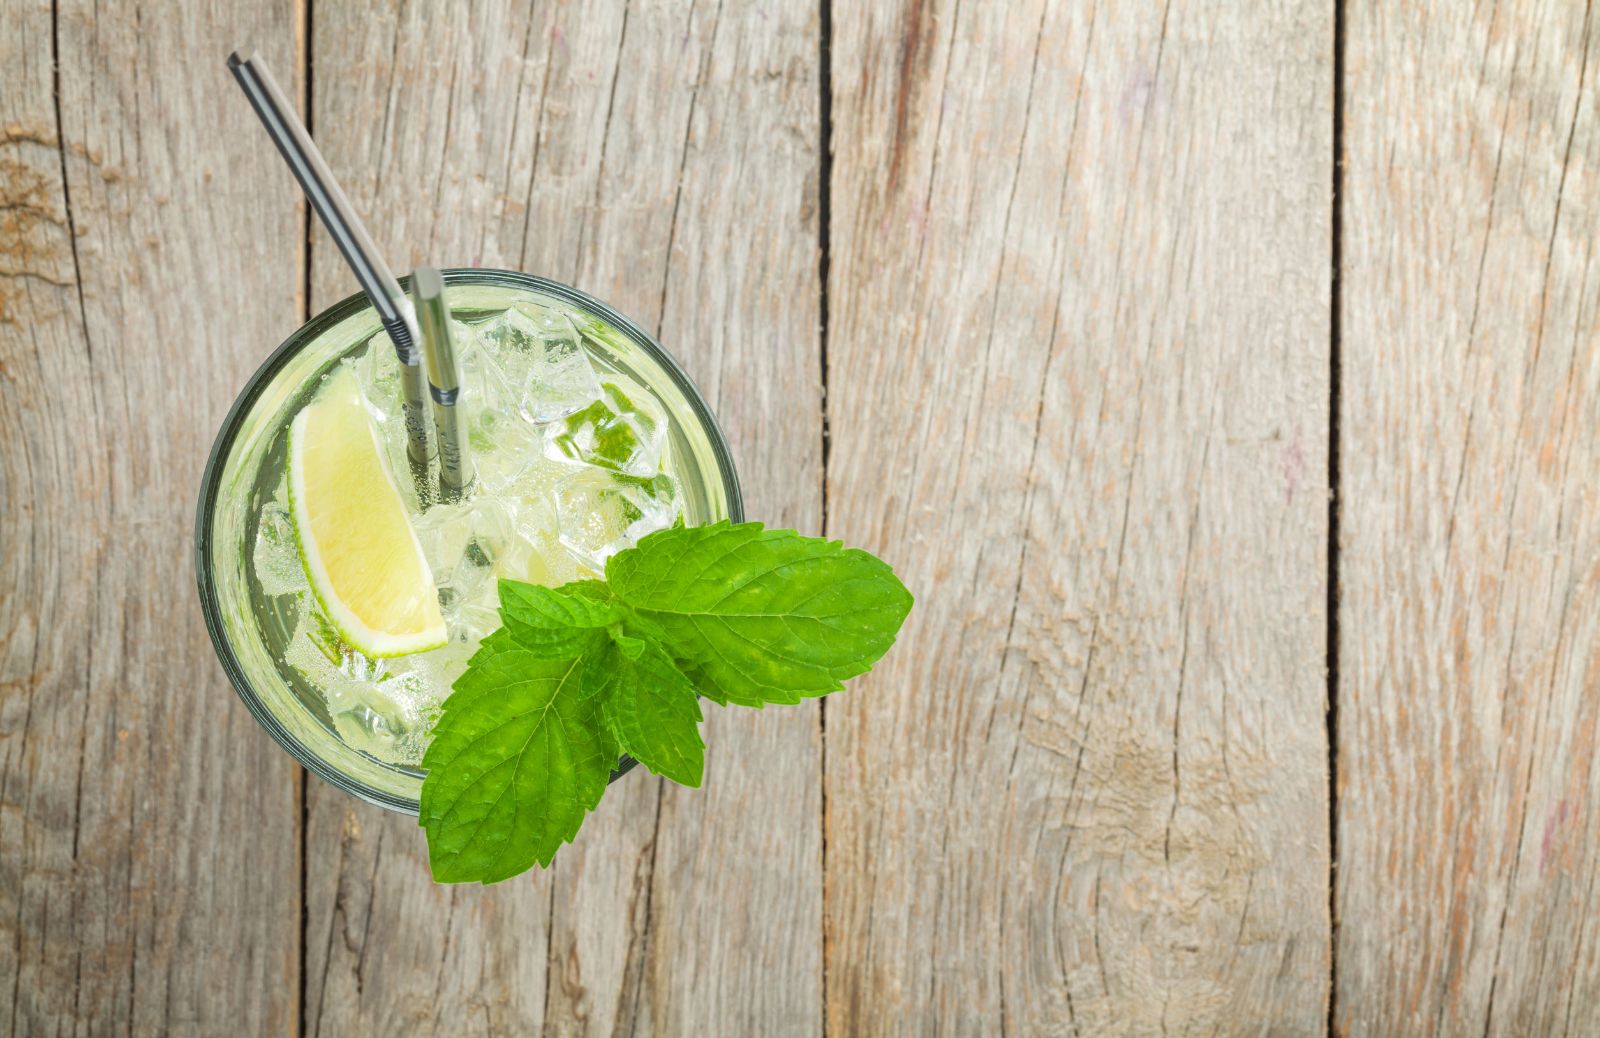 Cocktail analcolici: 3 fresche varianti alla menta